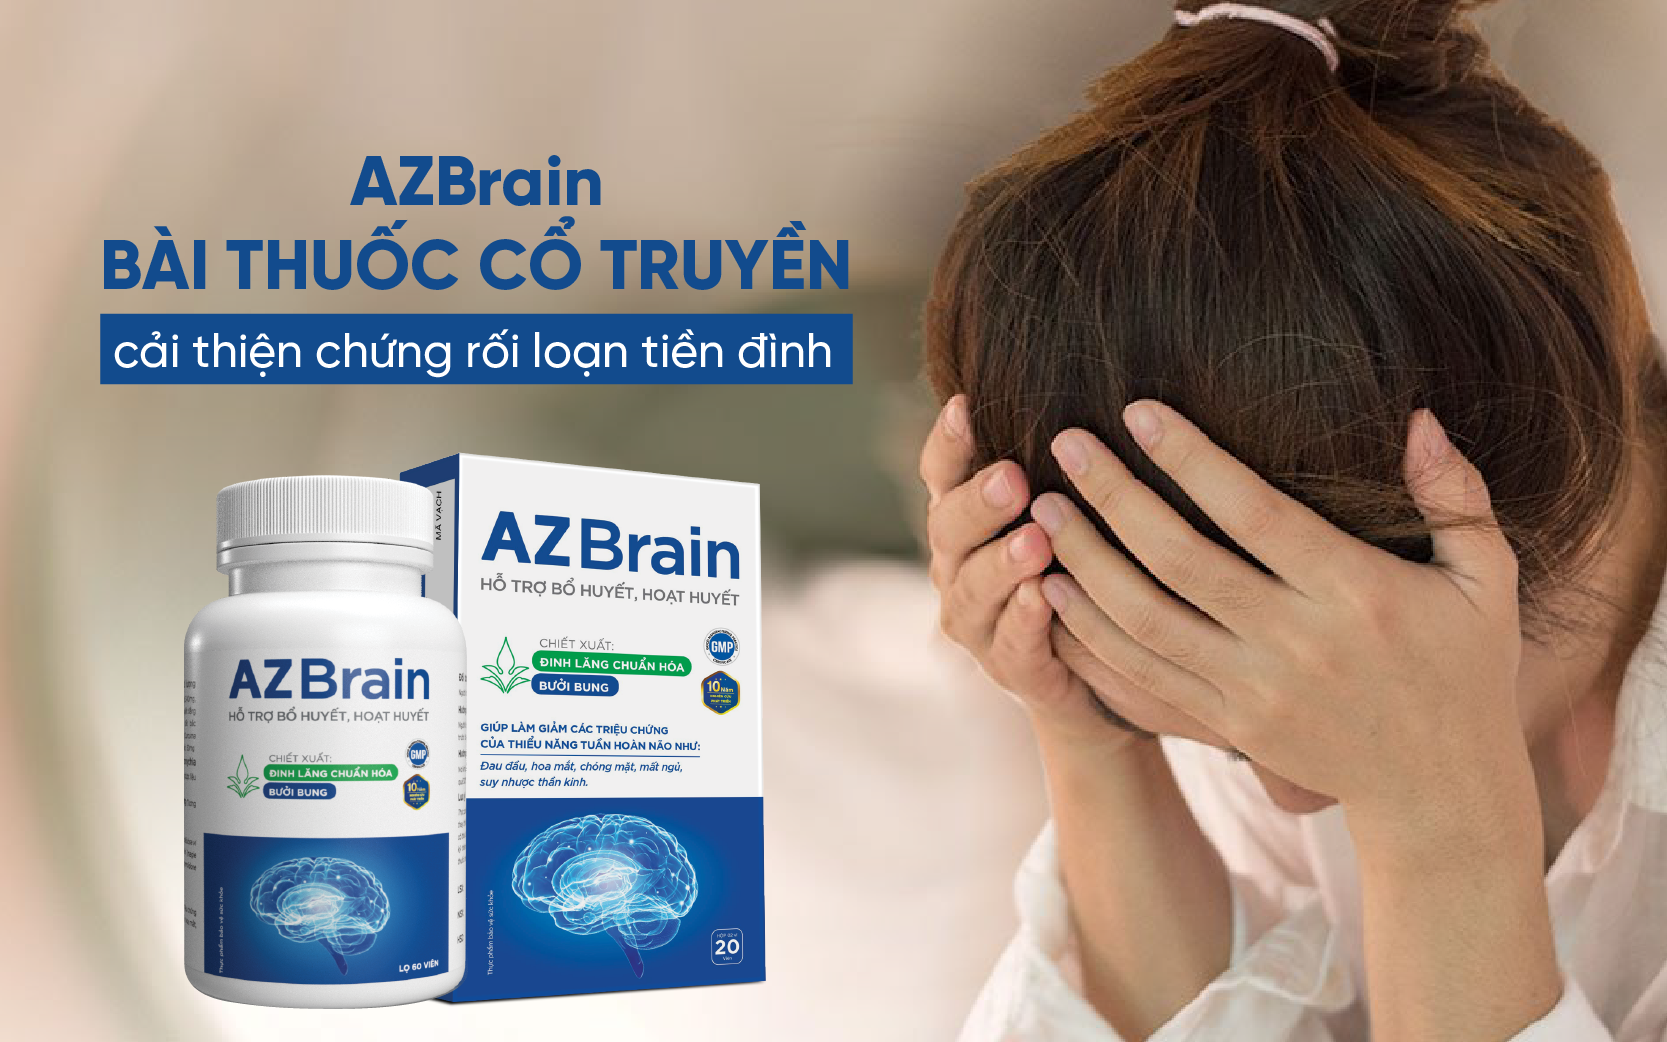 AZBrain với thành phần từ thảo dược thiên nhiên giúp hỗ trợ và cải thiện chứng rối loạn tiền đình nhanh chóng 